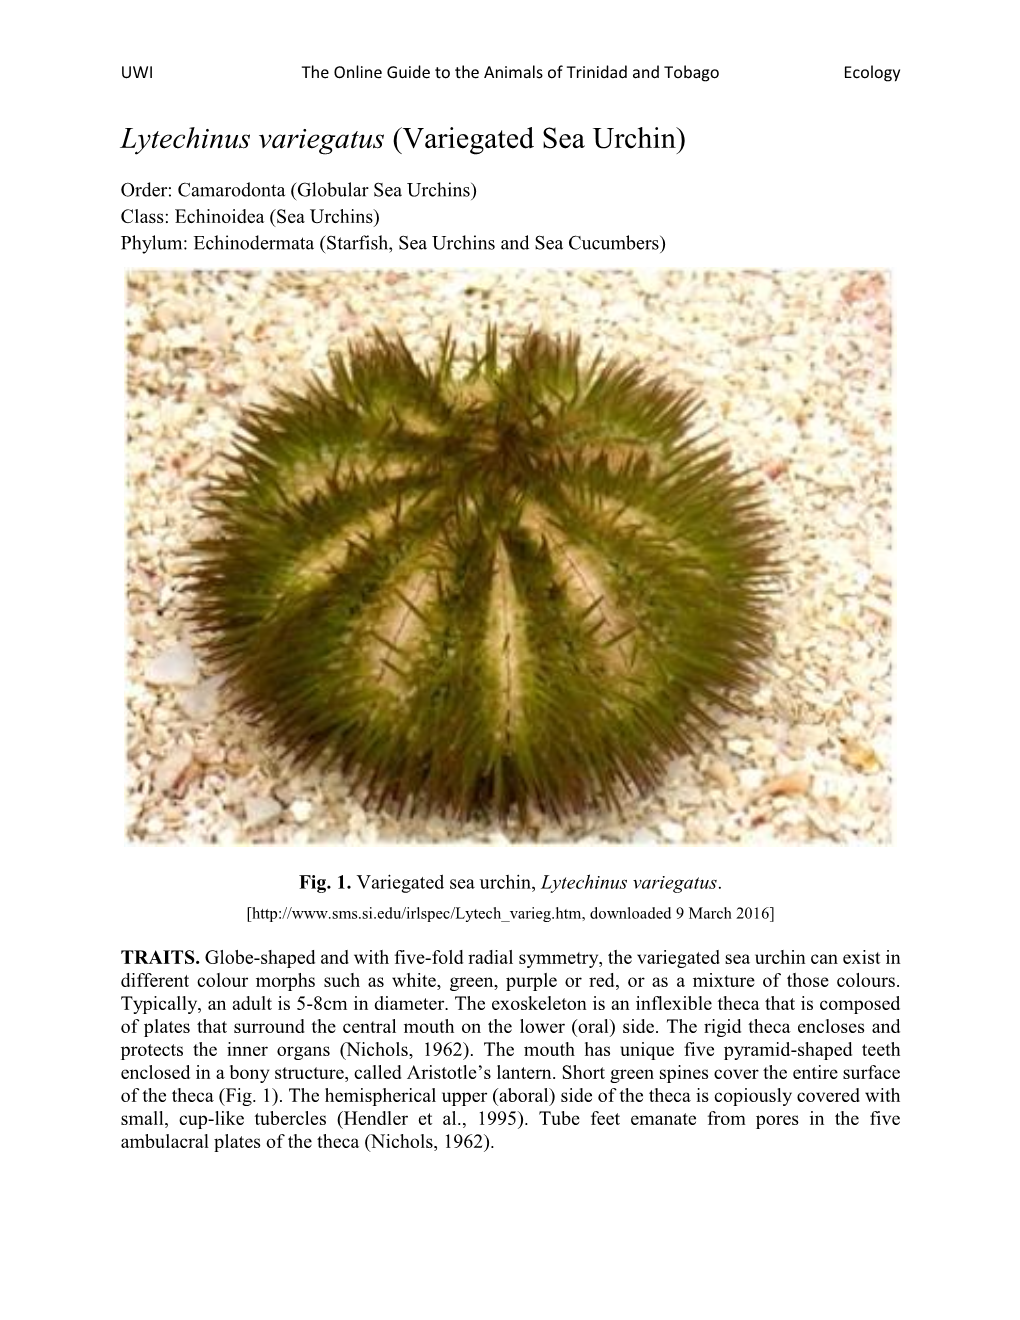 Lytechinus Variegatus (Variegated Sea Urchin)